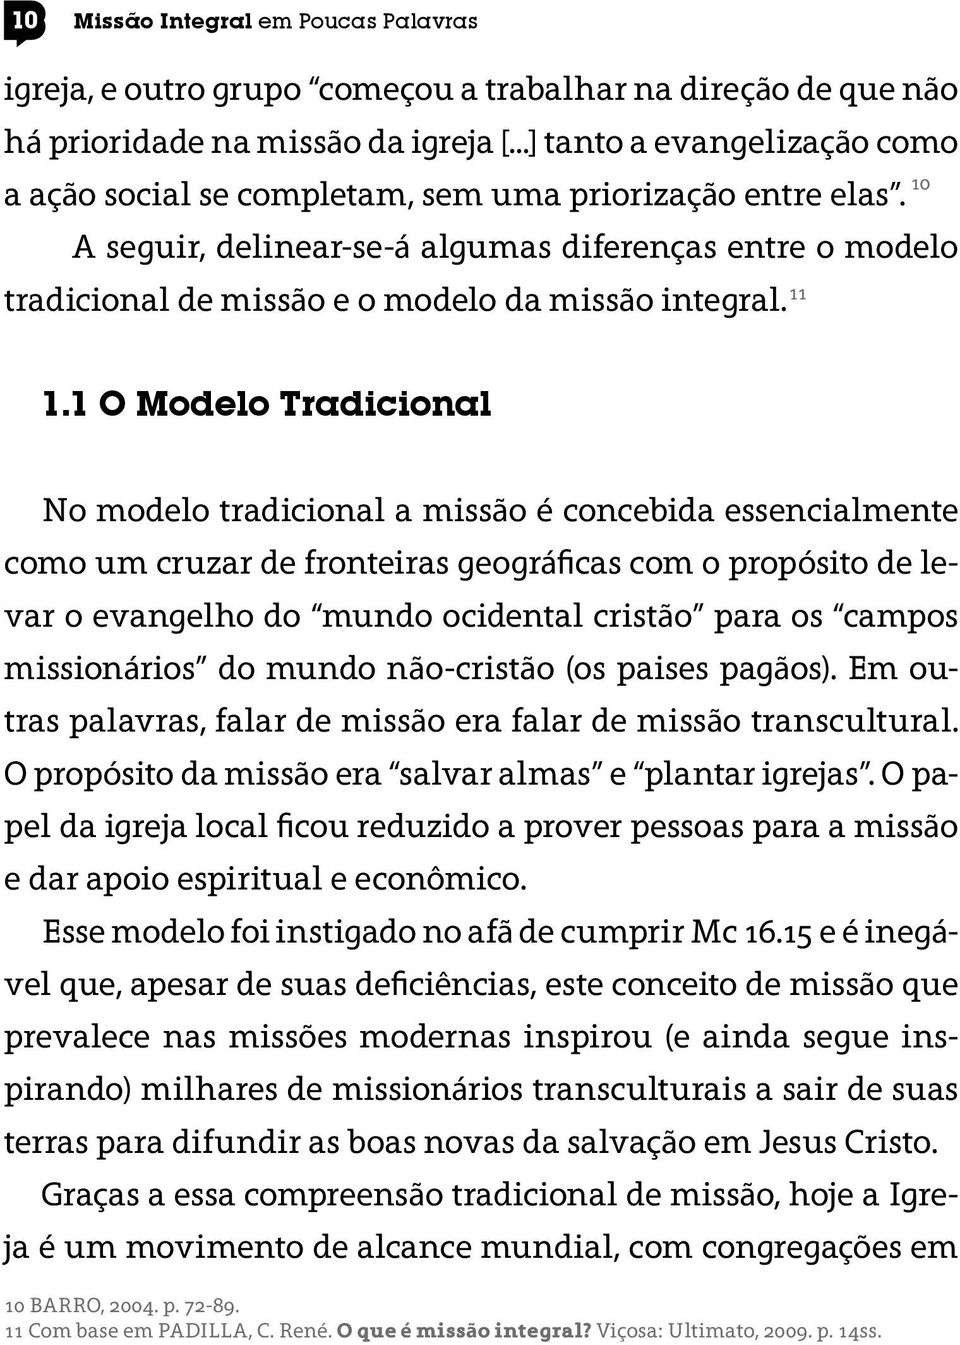 A seguir, delinear-se-á algumas diferenças entre o modelo tradicional de missão e o modelo da missão integral. 11 10 1.